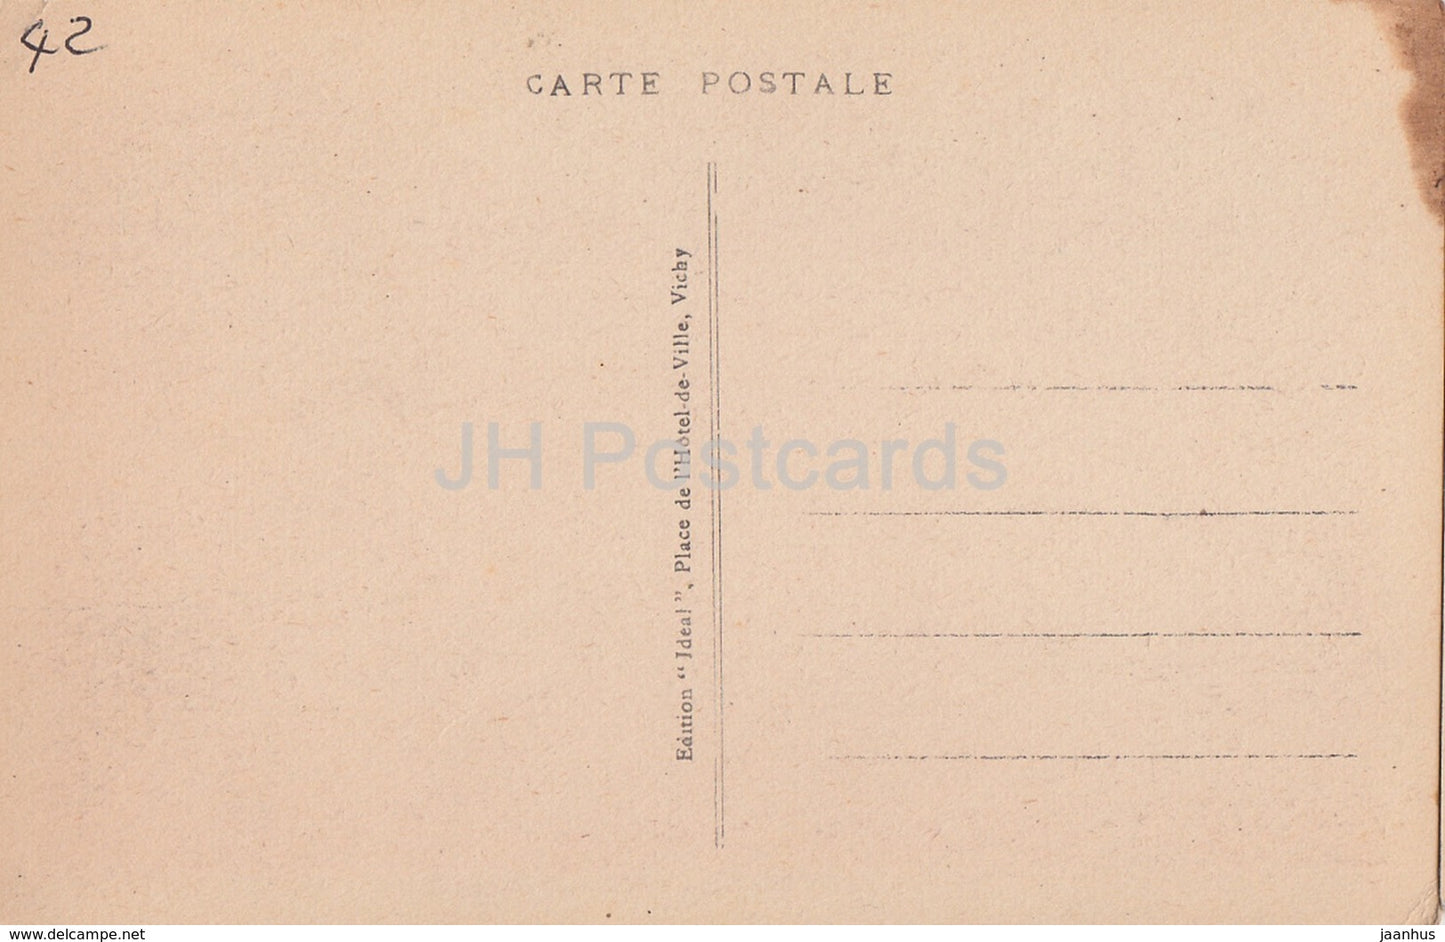 Le Coteau - Château de Renneville - château - 5107 - carte postale ancienne - France - inutilisée